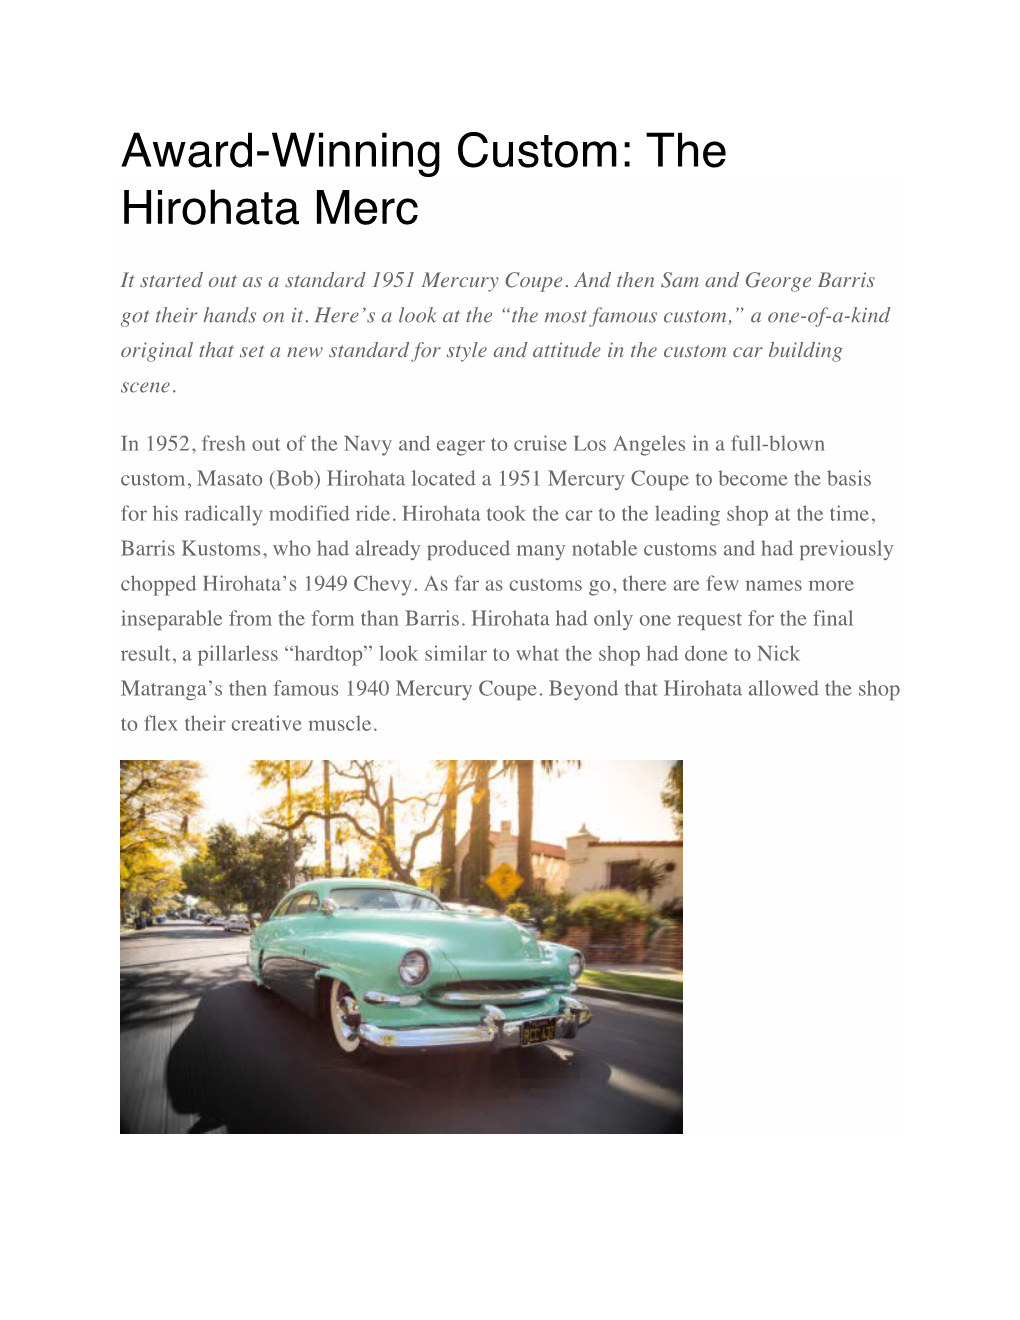 The Hirohata Merc